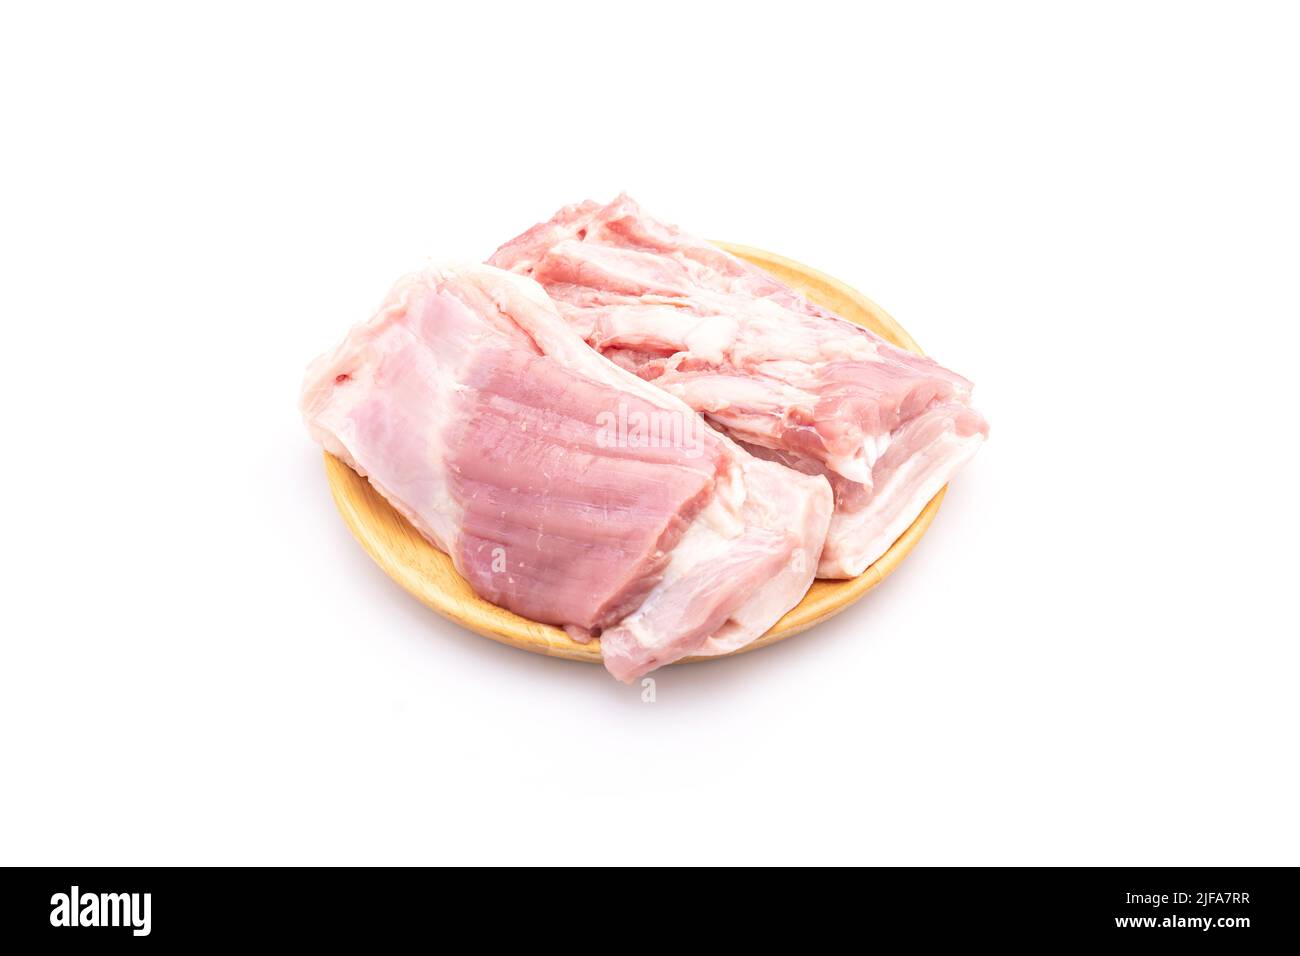 Nahaufnahme von rohem, streifendem Schweinefleisch auf einer Holzschale, die auf weißem Hintergrund isoliert ist. Lebensmittel- und Gesundheitskonzept Stockfoto